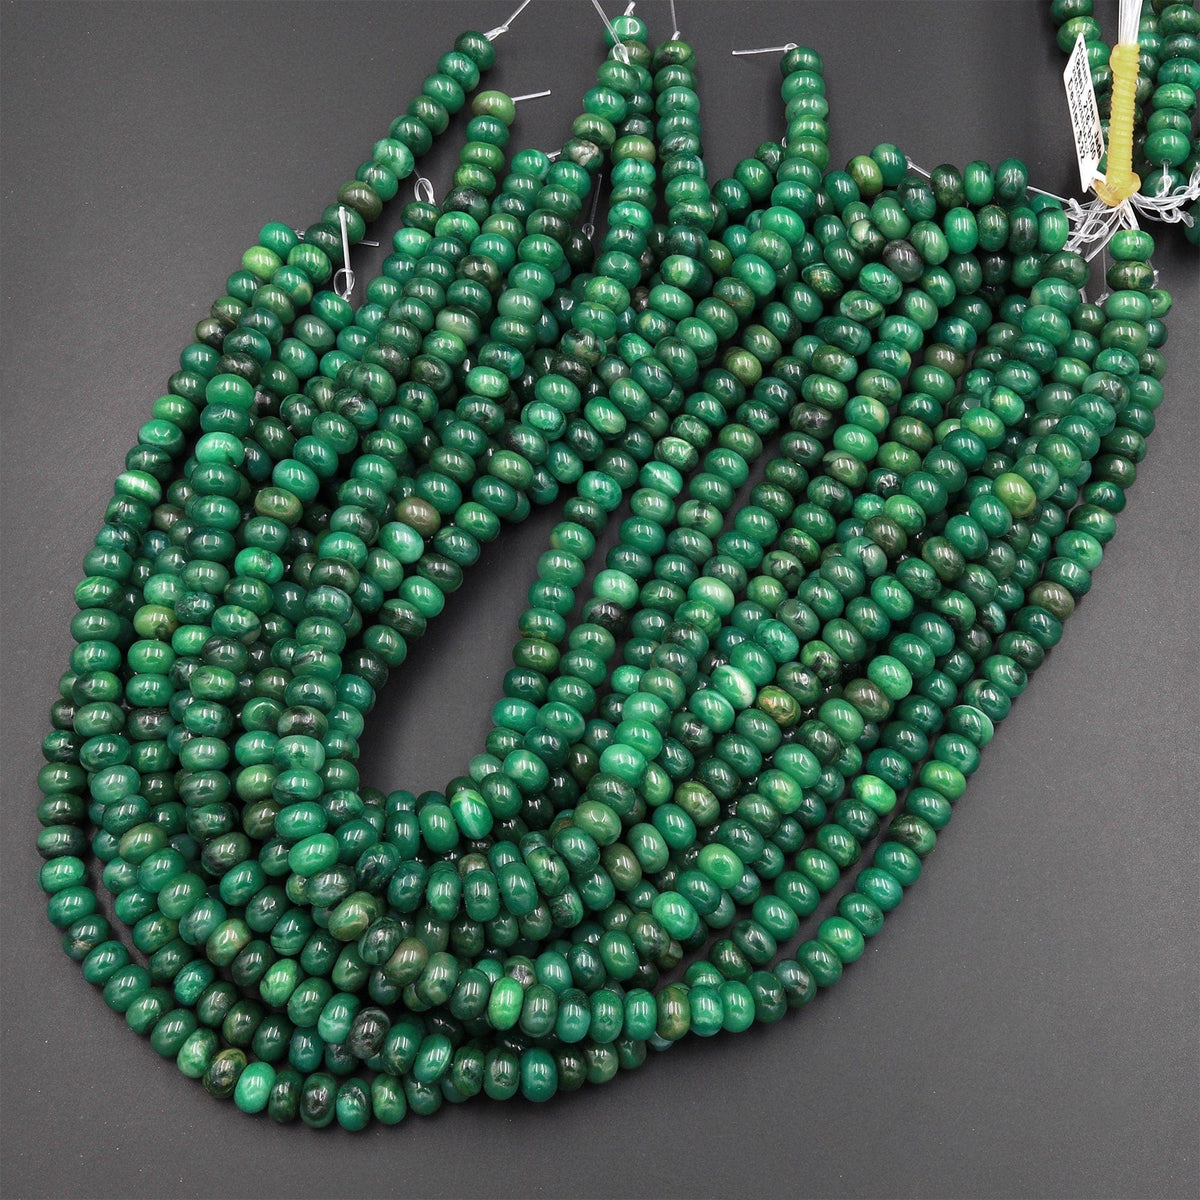 natural green jade beads in bulk